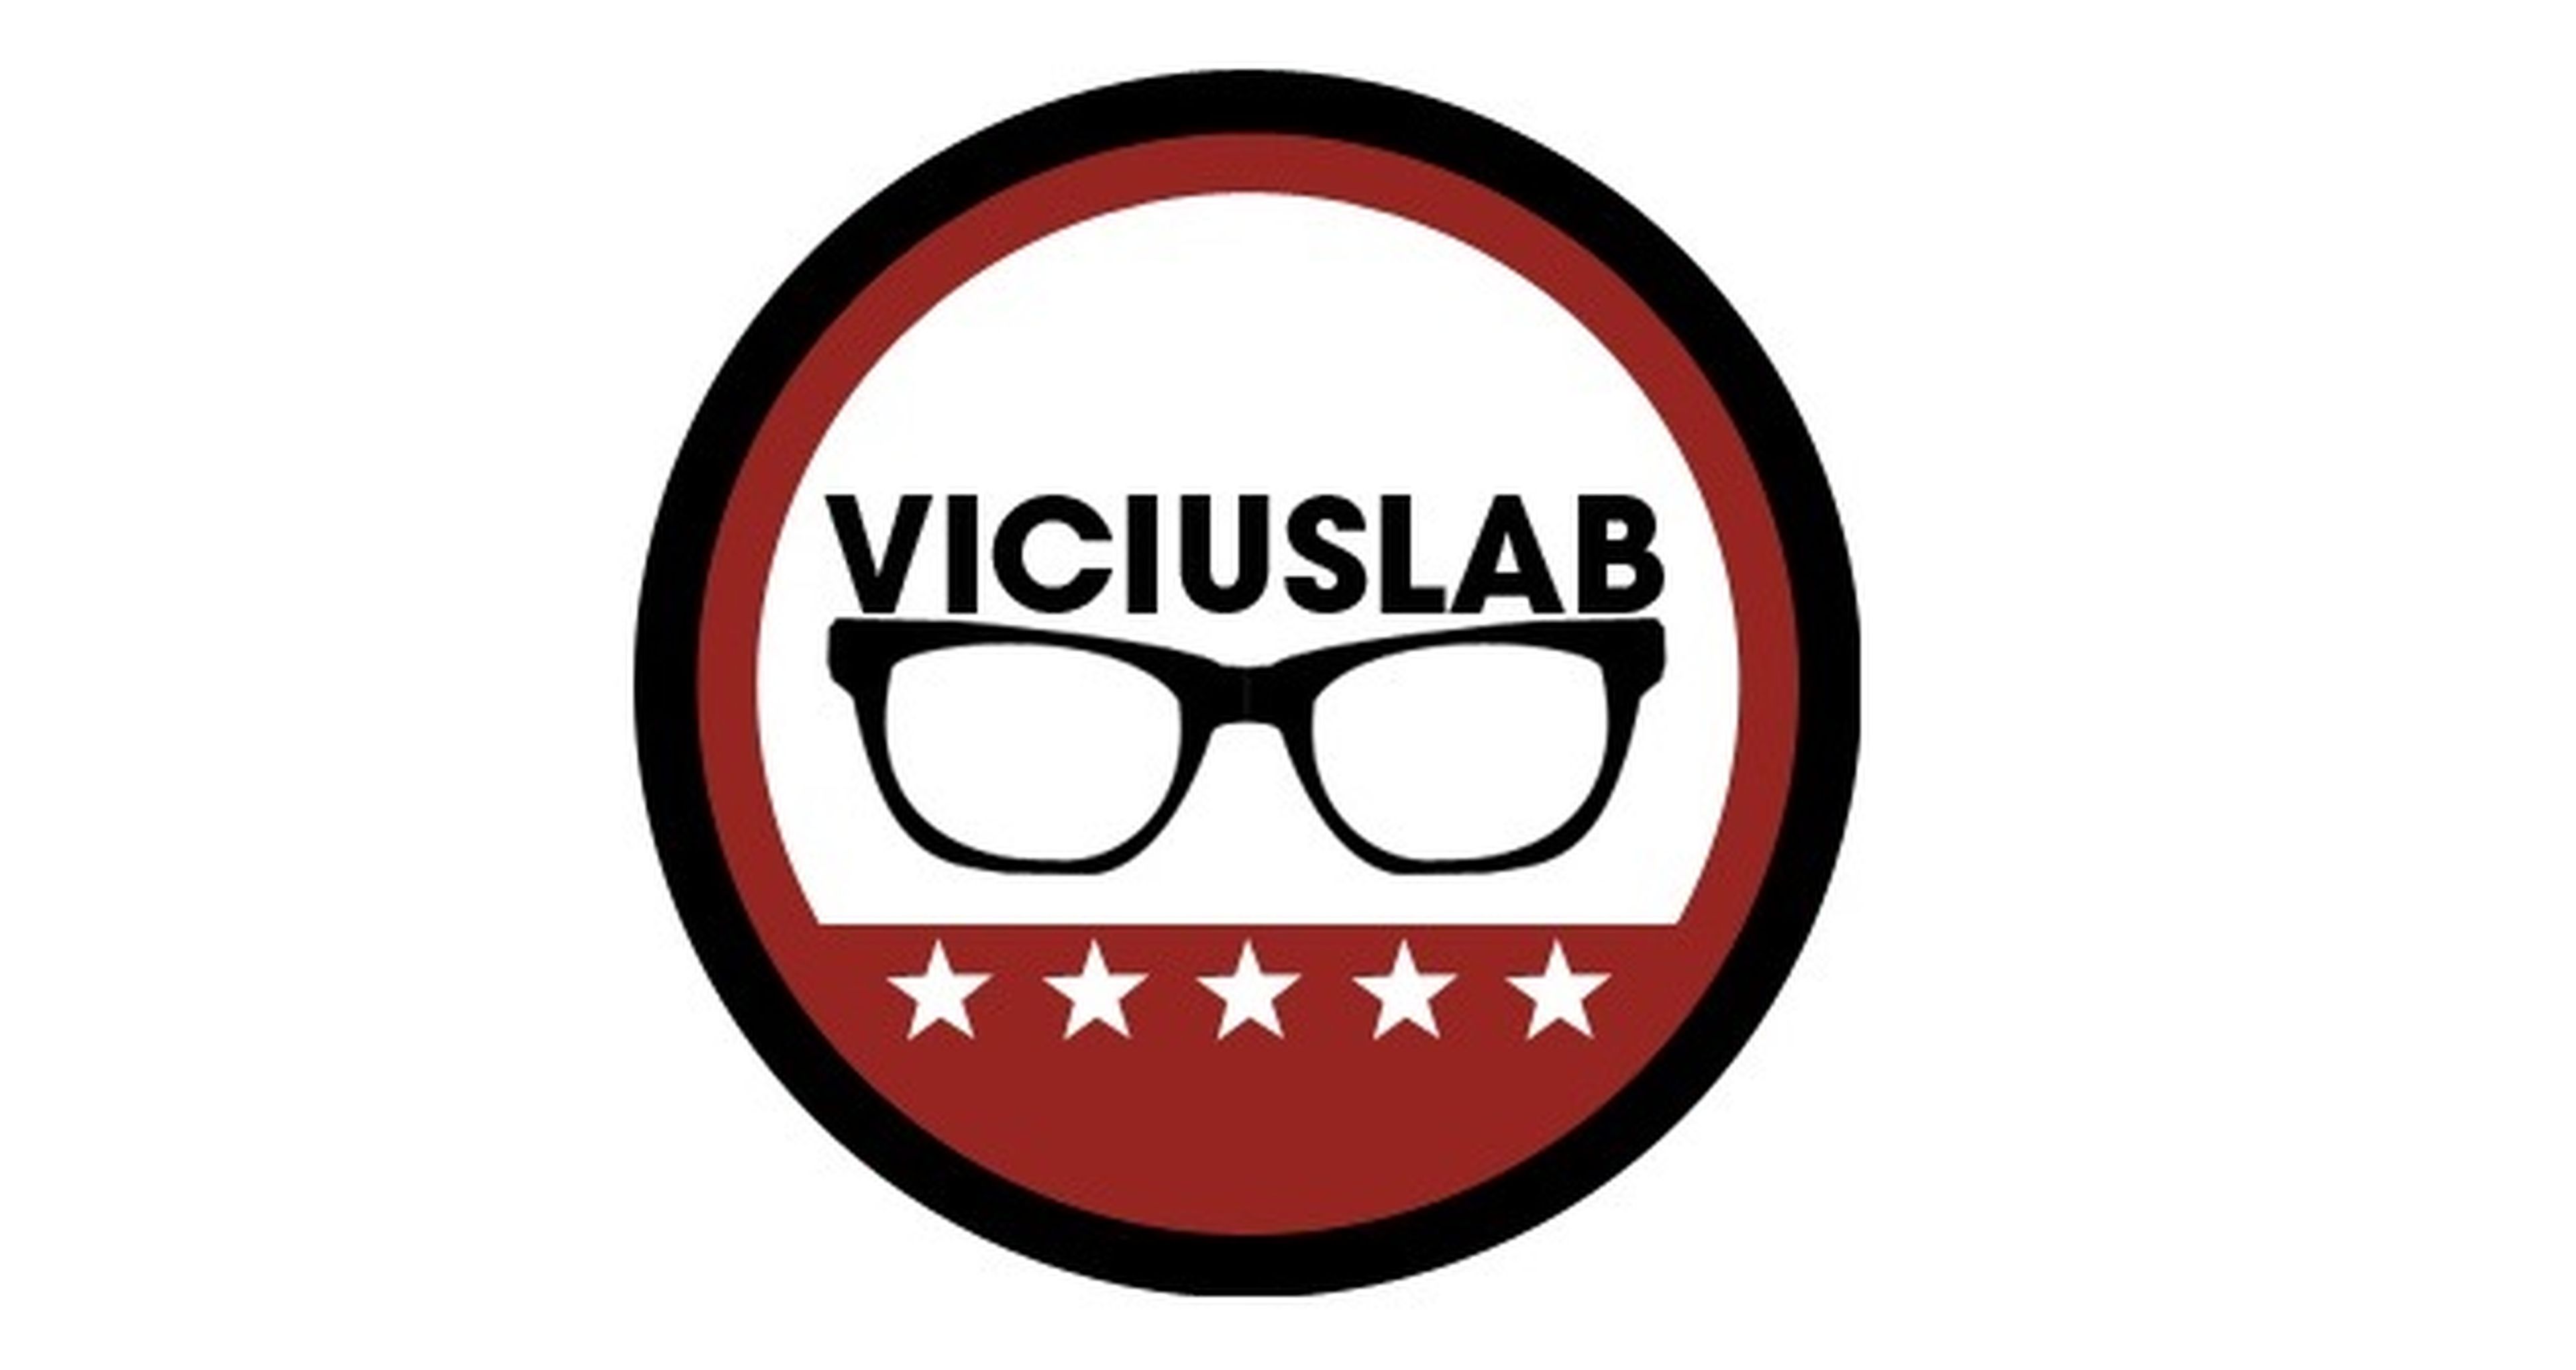 Viciuslab casteará los partidos de Dota 2 en la ESL One